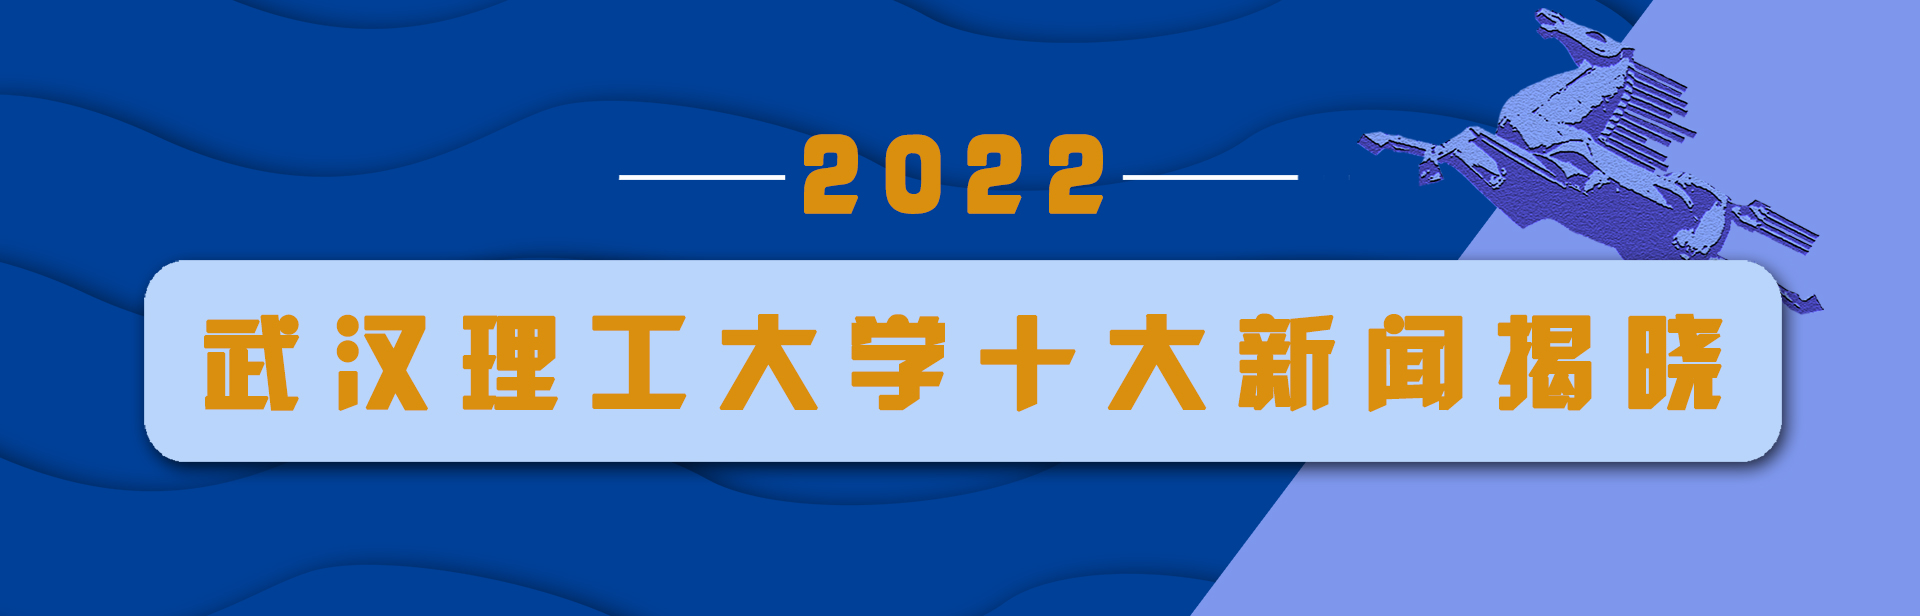 武汉理工大学2022年度十大新闻揭晓